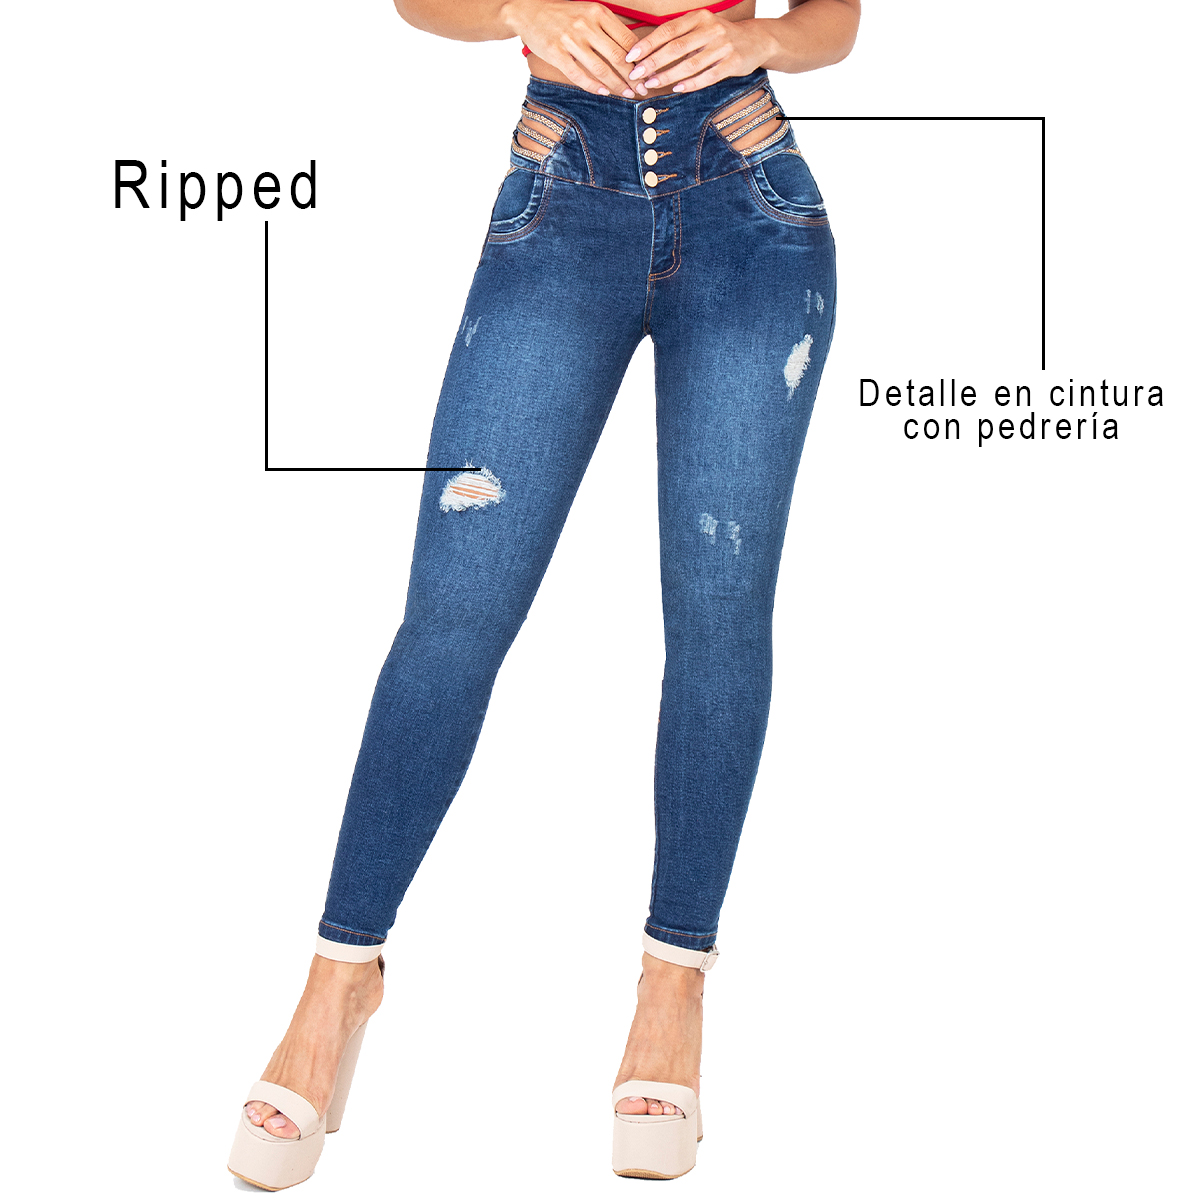 Los jeans colombianos con correas es la prenda perfecta que te hará sentir segura y con un toque único. Tiene un diseño especial que realza tus curvas.